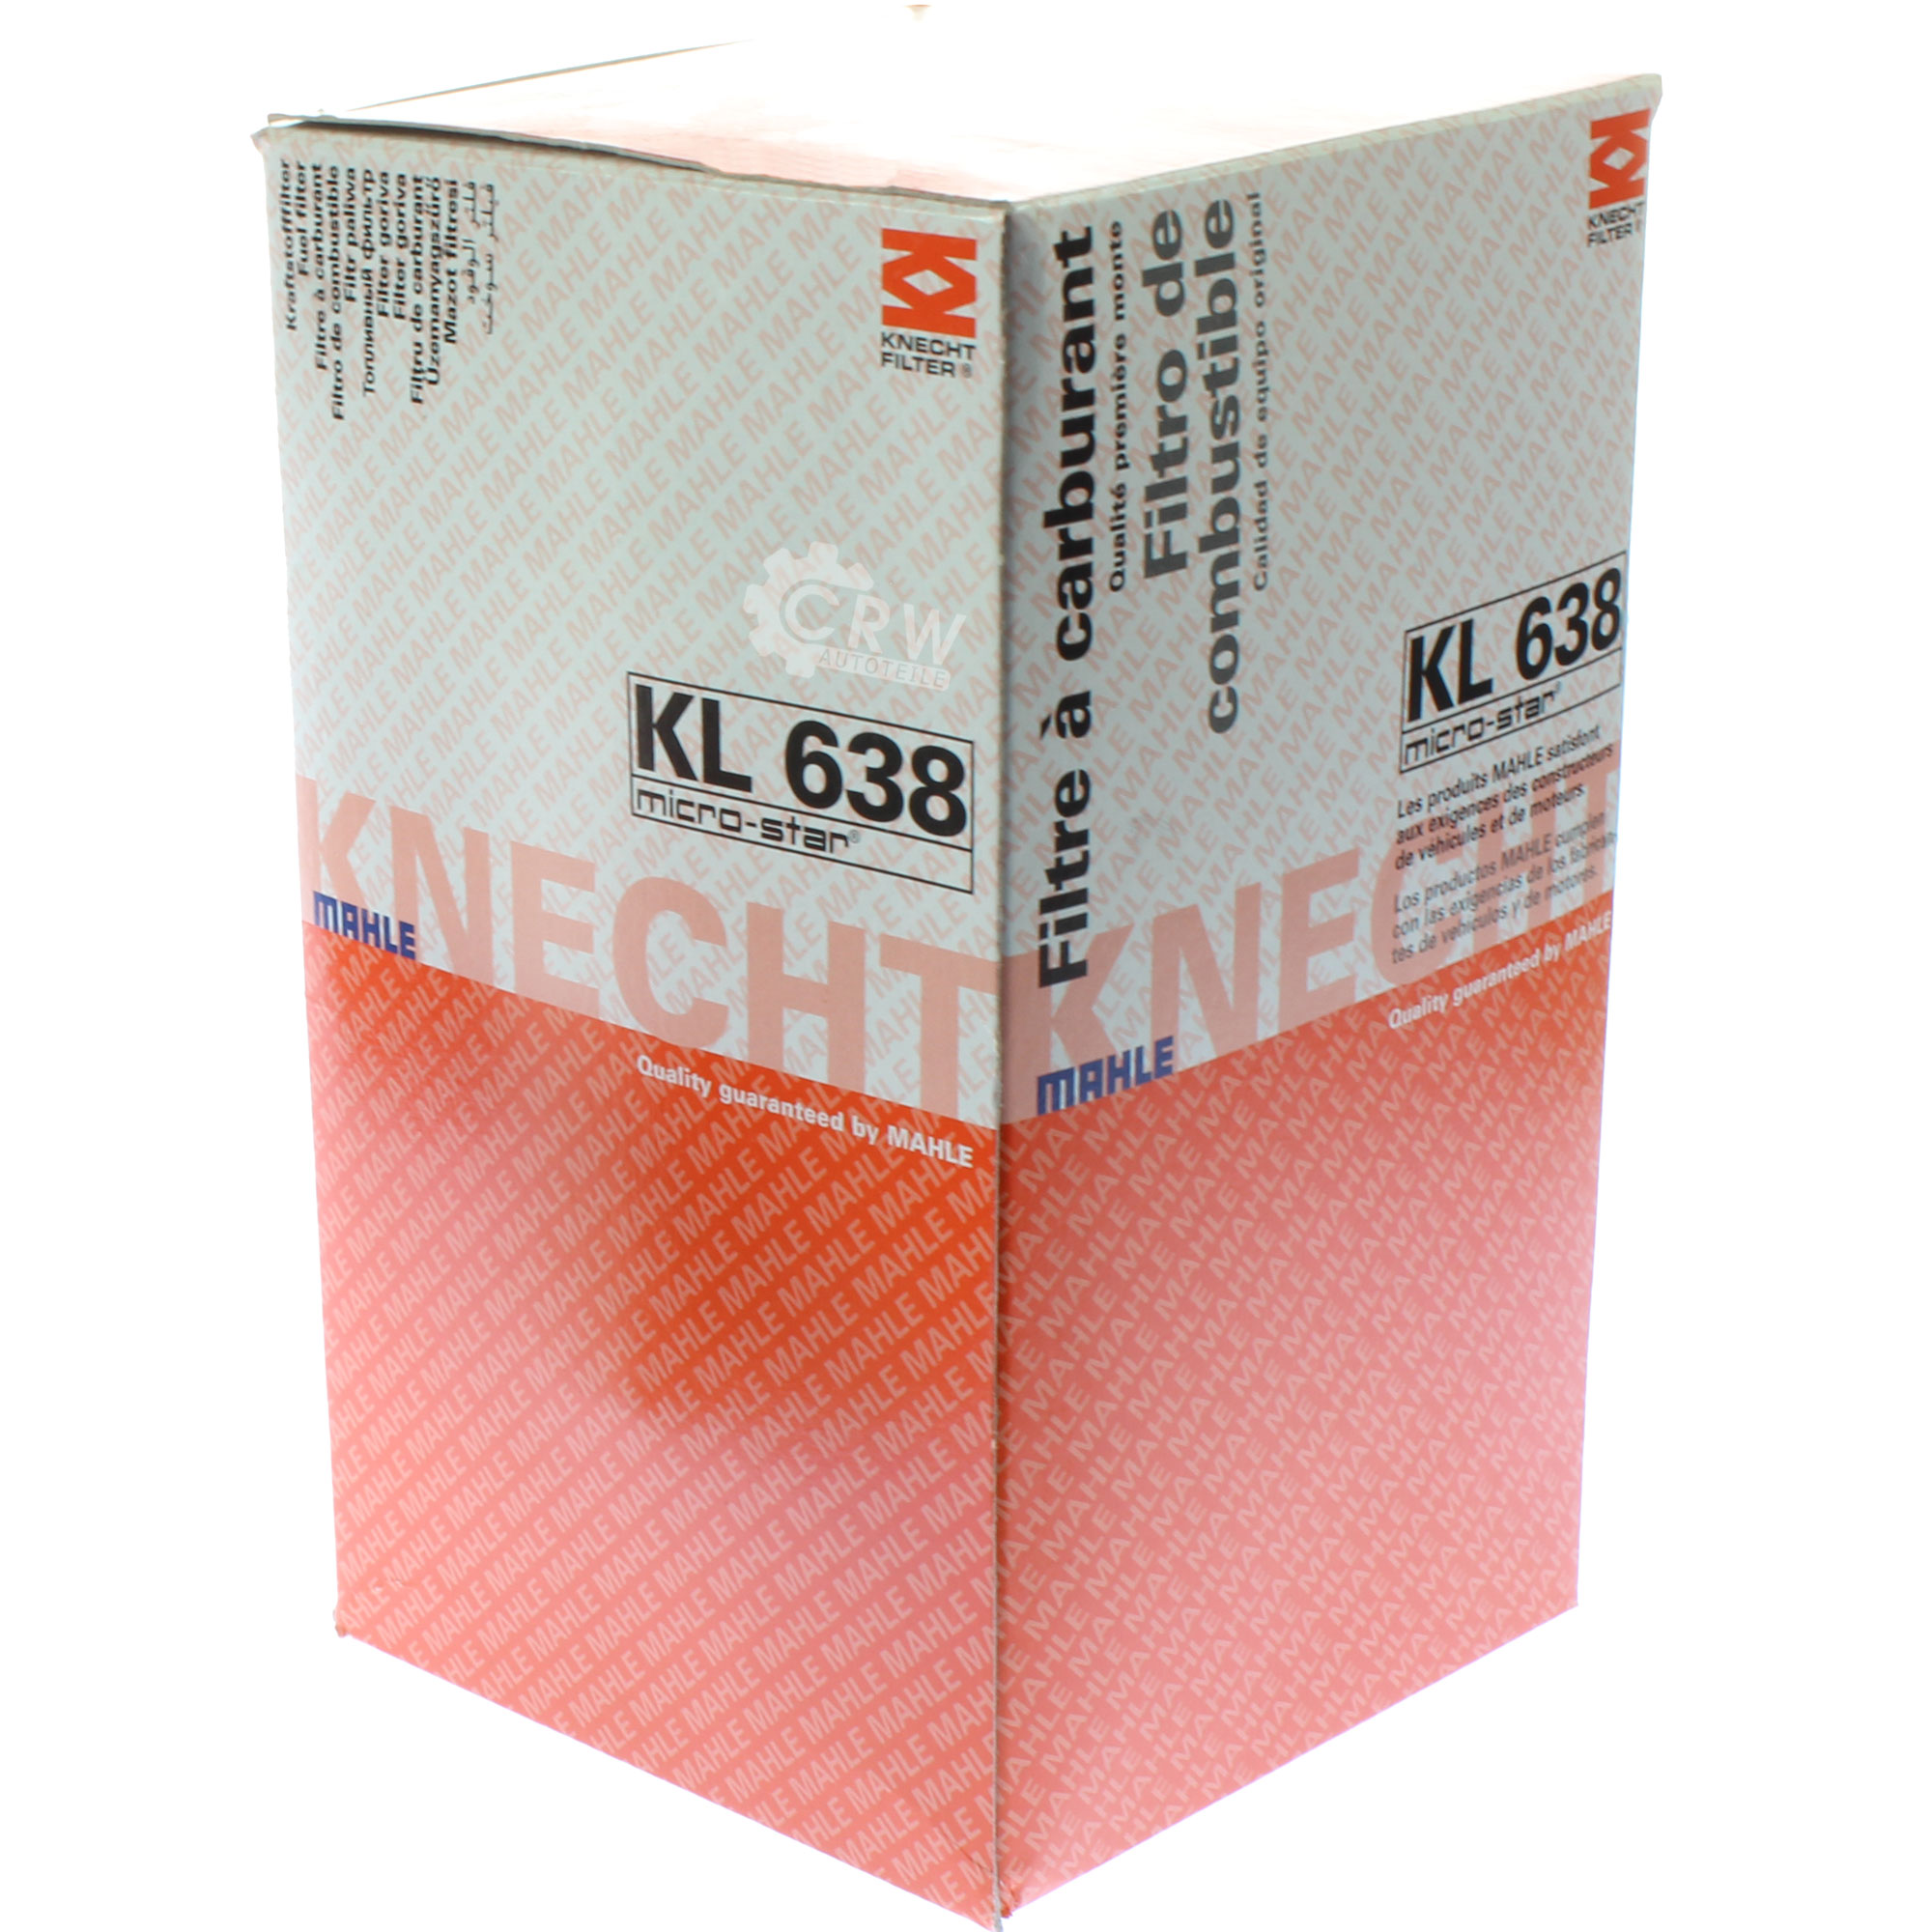 MAHLE / KNECHT KL 638 Kraftstofffilter Filter Fuel